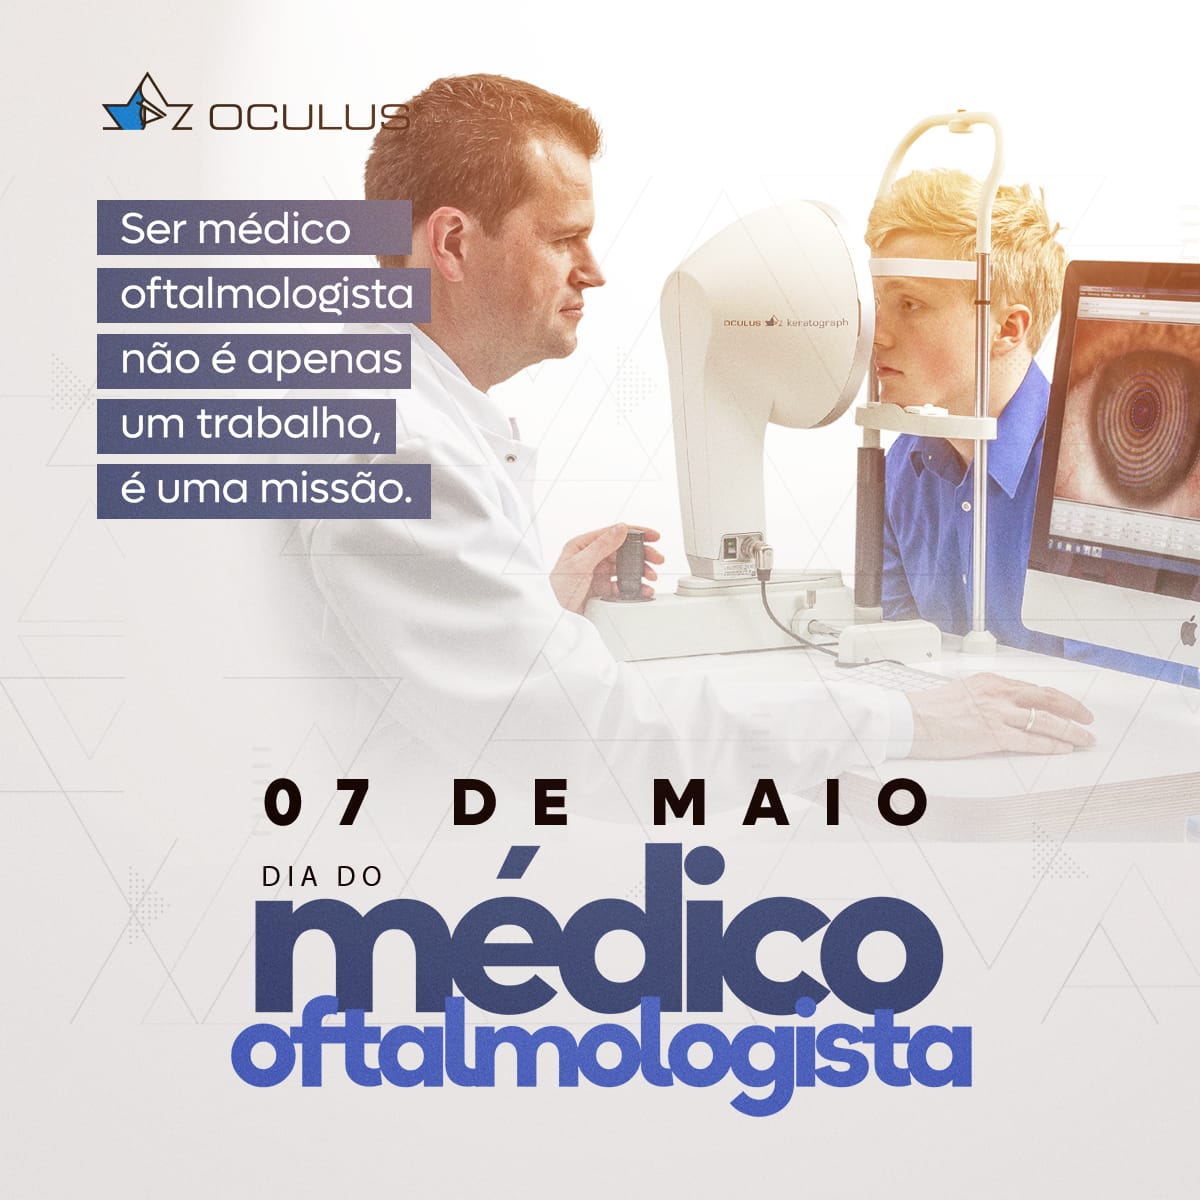 Hoje celebramos o dia do médico oftalmologista!

Na OCULUS Brasil, temos o privilégio de apoiar esses profissionais incríveis com equipamentos de ponta, contribuindo para sua missão de cuidar da saúde ocular. 

Agradecemos por sua dedicação incansável e paixão.

 #Oftamologia